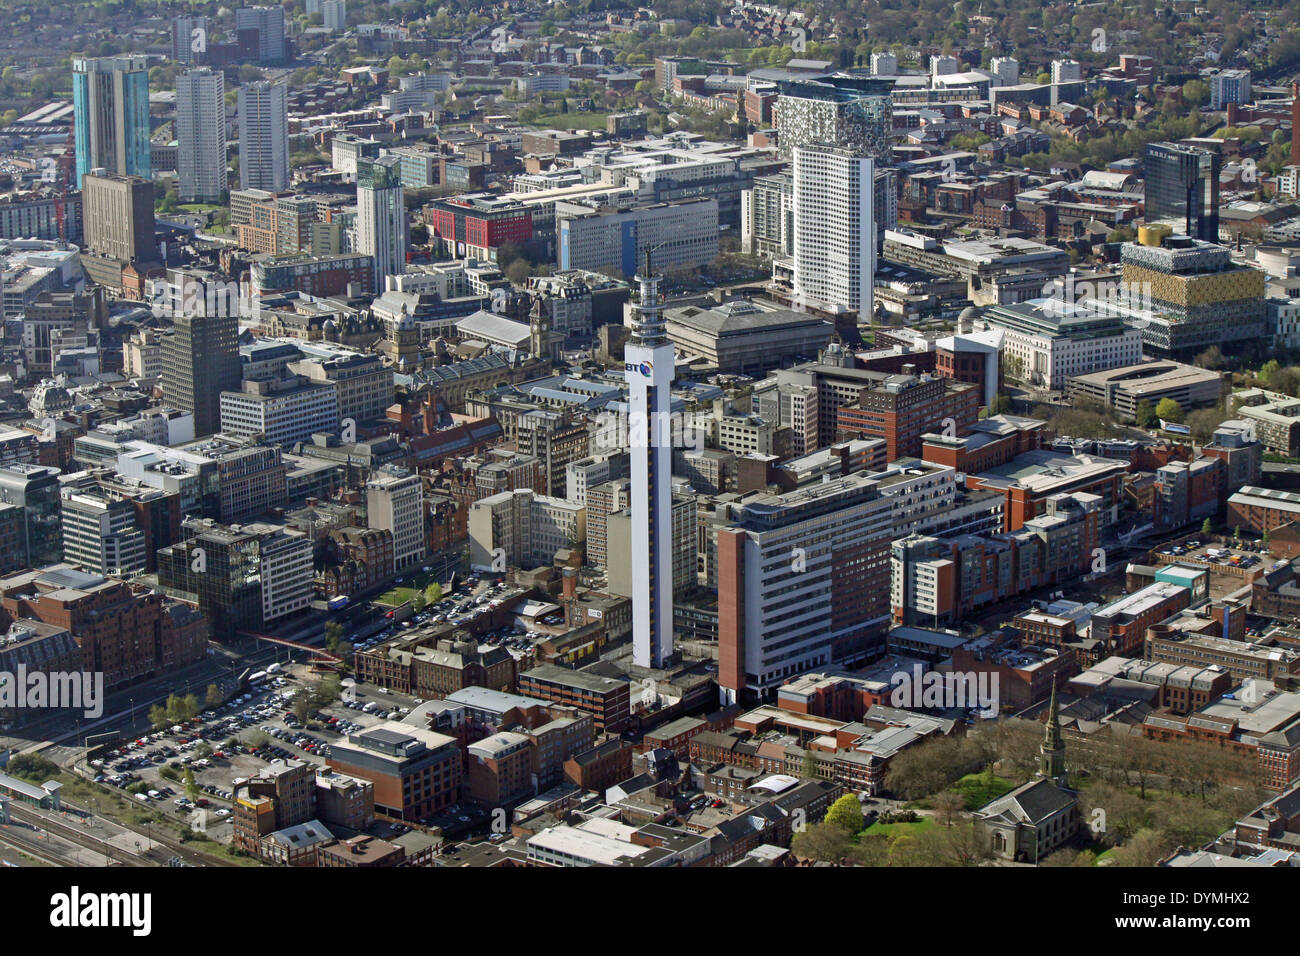 Vue aérienne de la Tour BT et de la Maison Brindley, vue sud sur le centre-ville de Birmingham (St. L'église de Paul est juste visible en bas à droite du plan) Banque D'Images